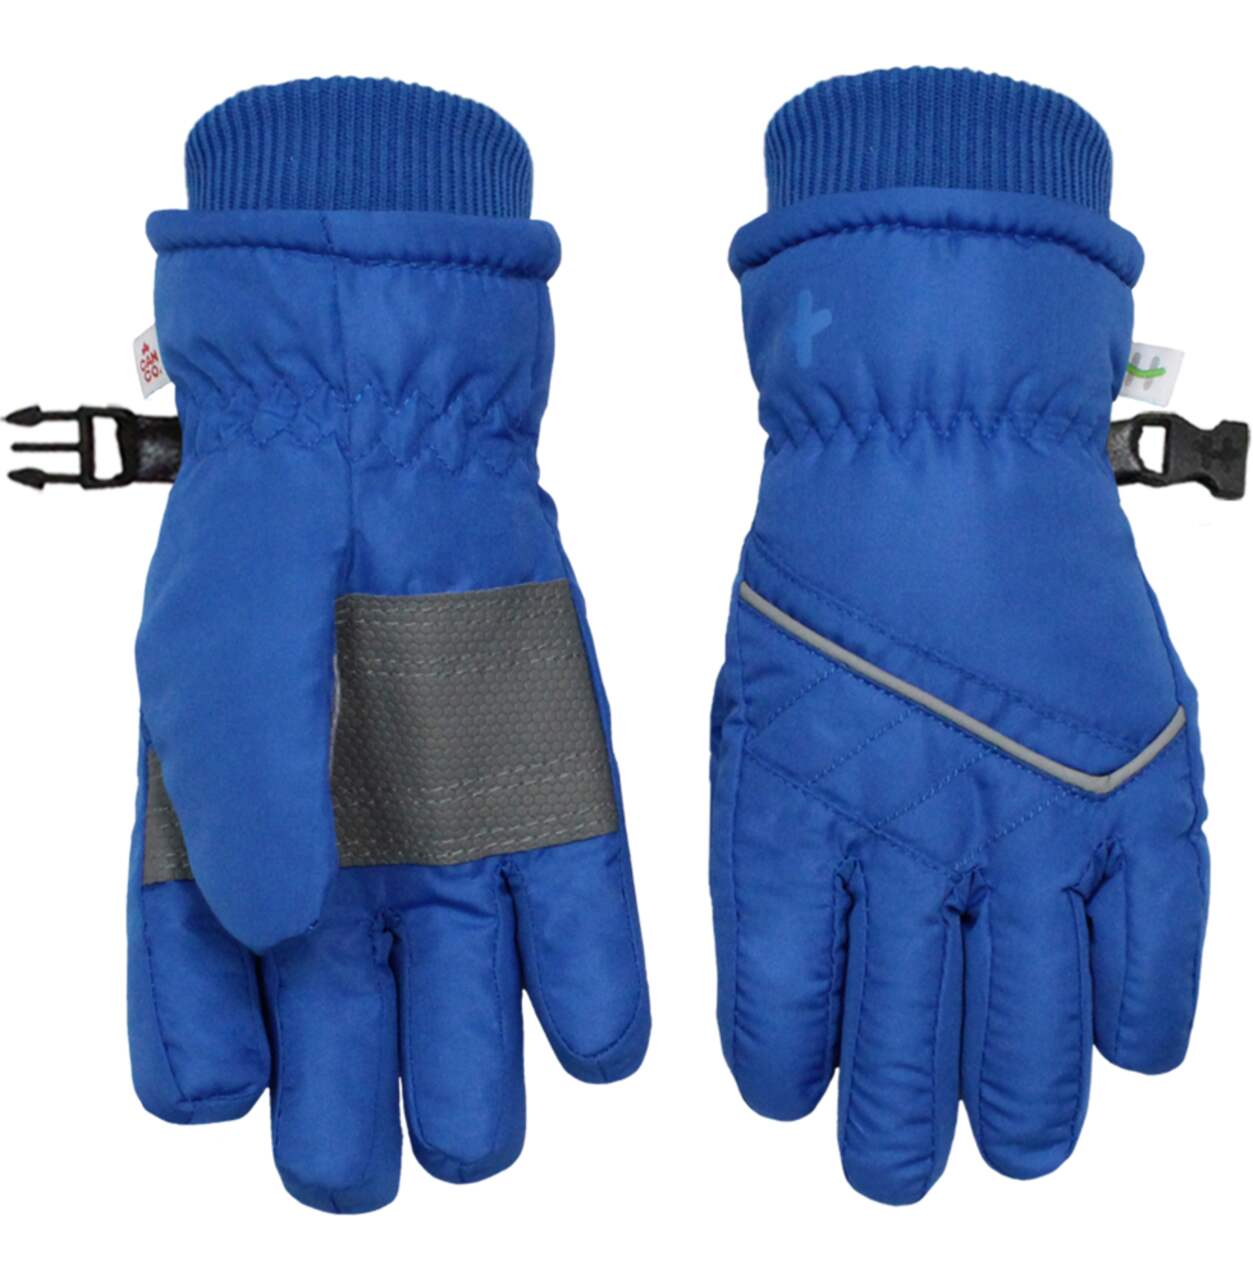 Kids Winter Warm Gloves Waterproof Snow Ski Gloves Insulated Non-slip Ski  Gloves with Wrist Strap for Children Boy Girl 24BD